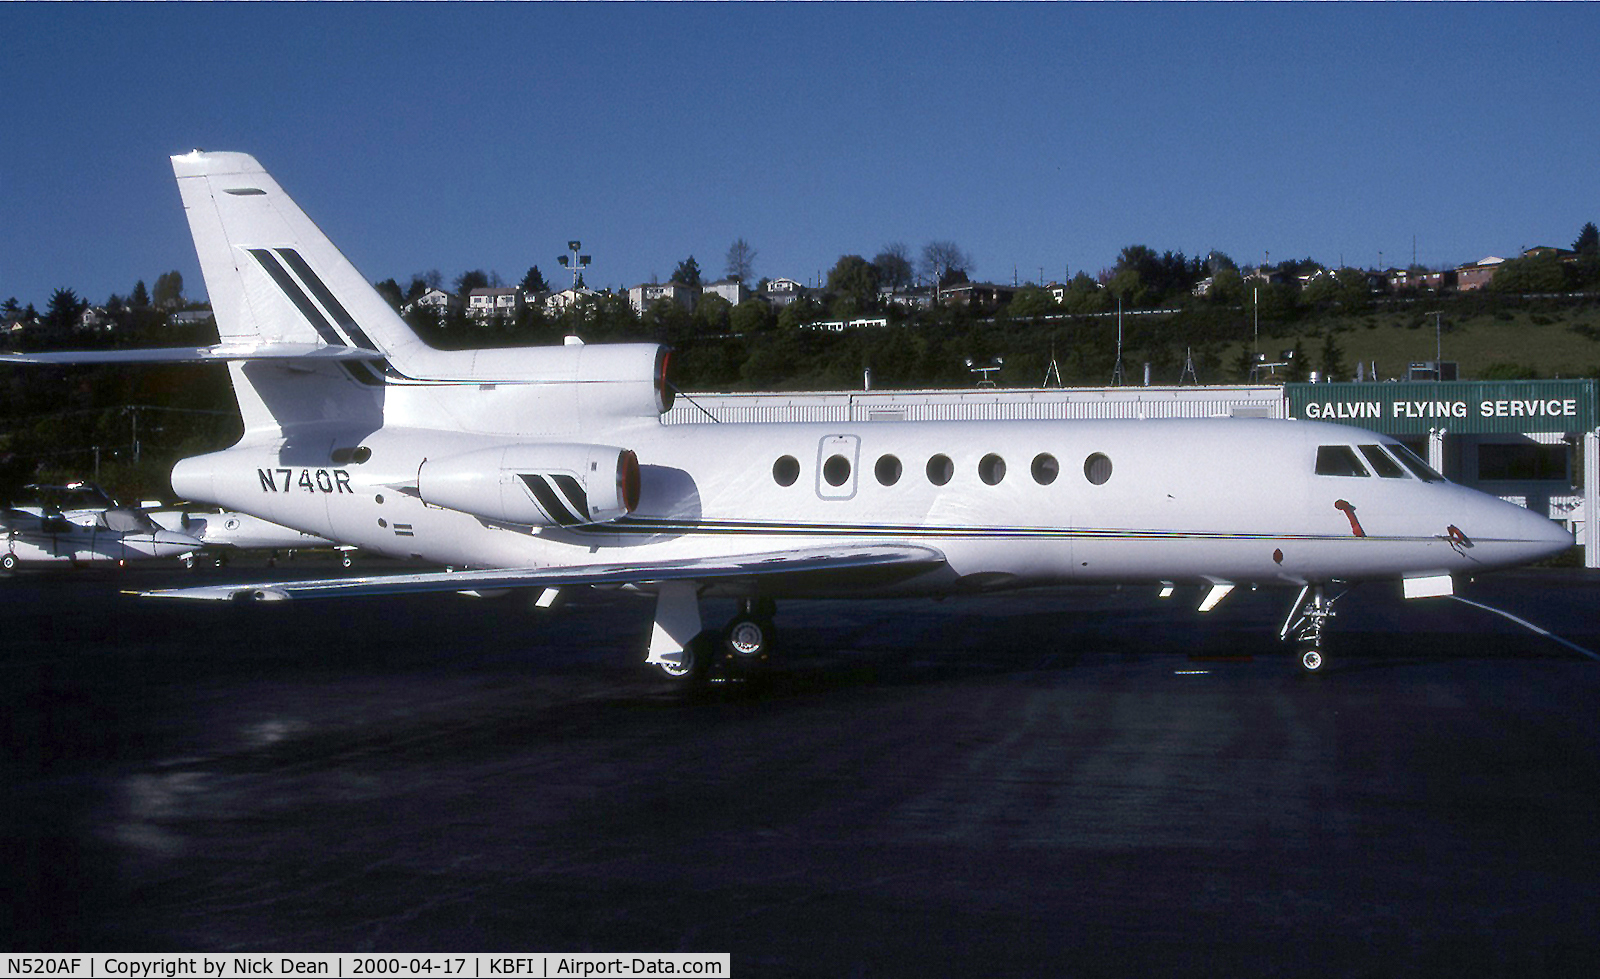 N520AF, 1994 Dassault Falcon 50 C/N 247, Seen here as N740R prior to become N520AF as posted